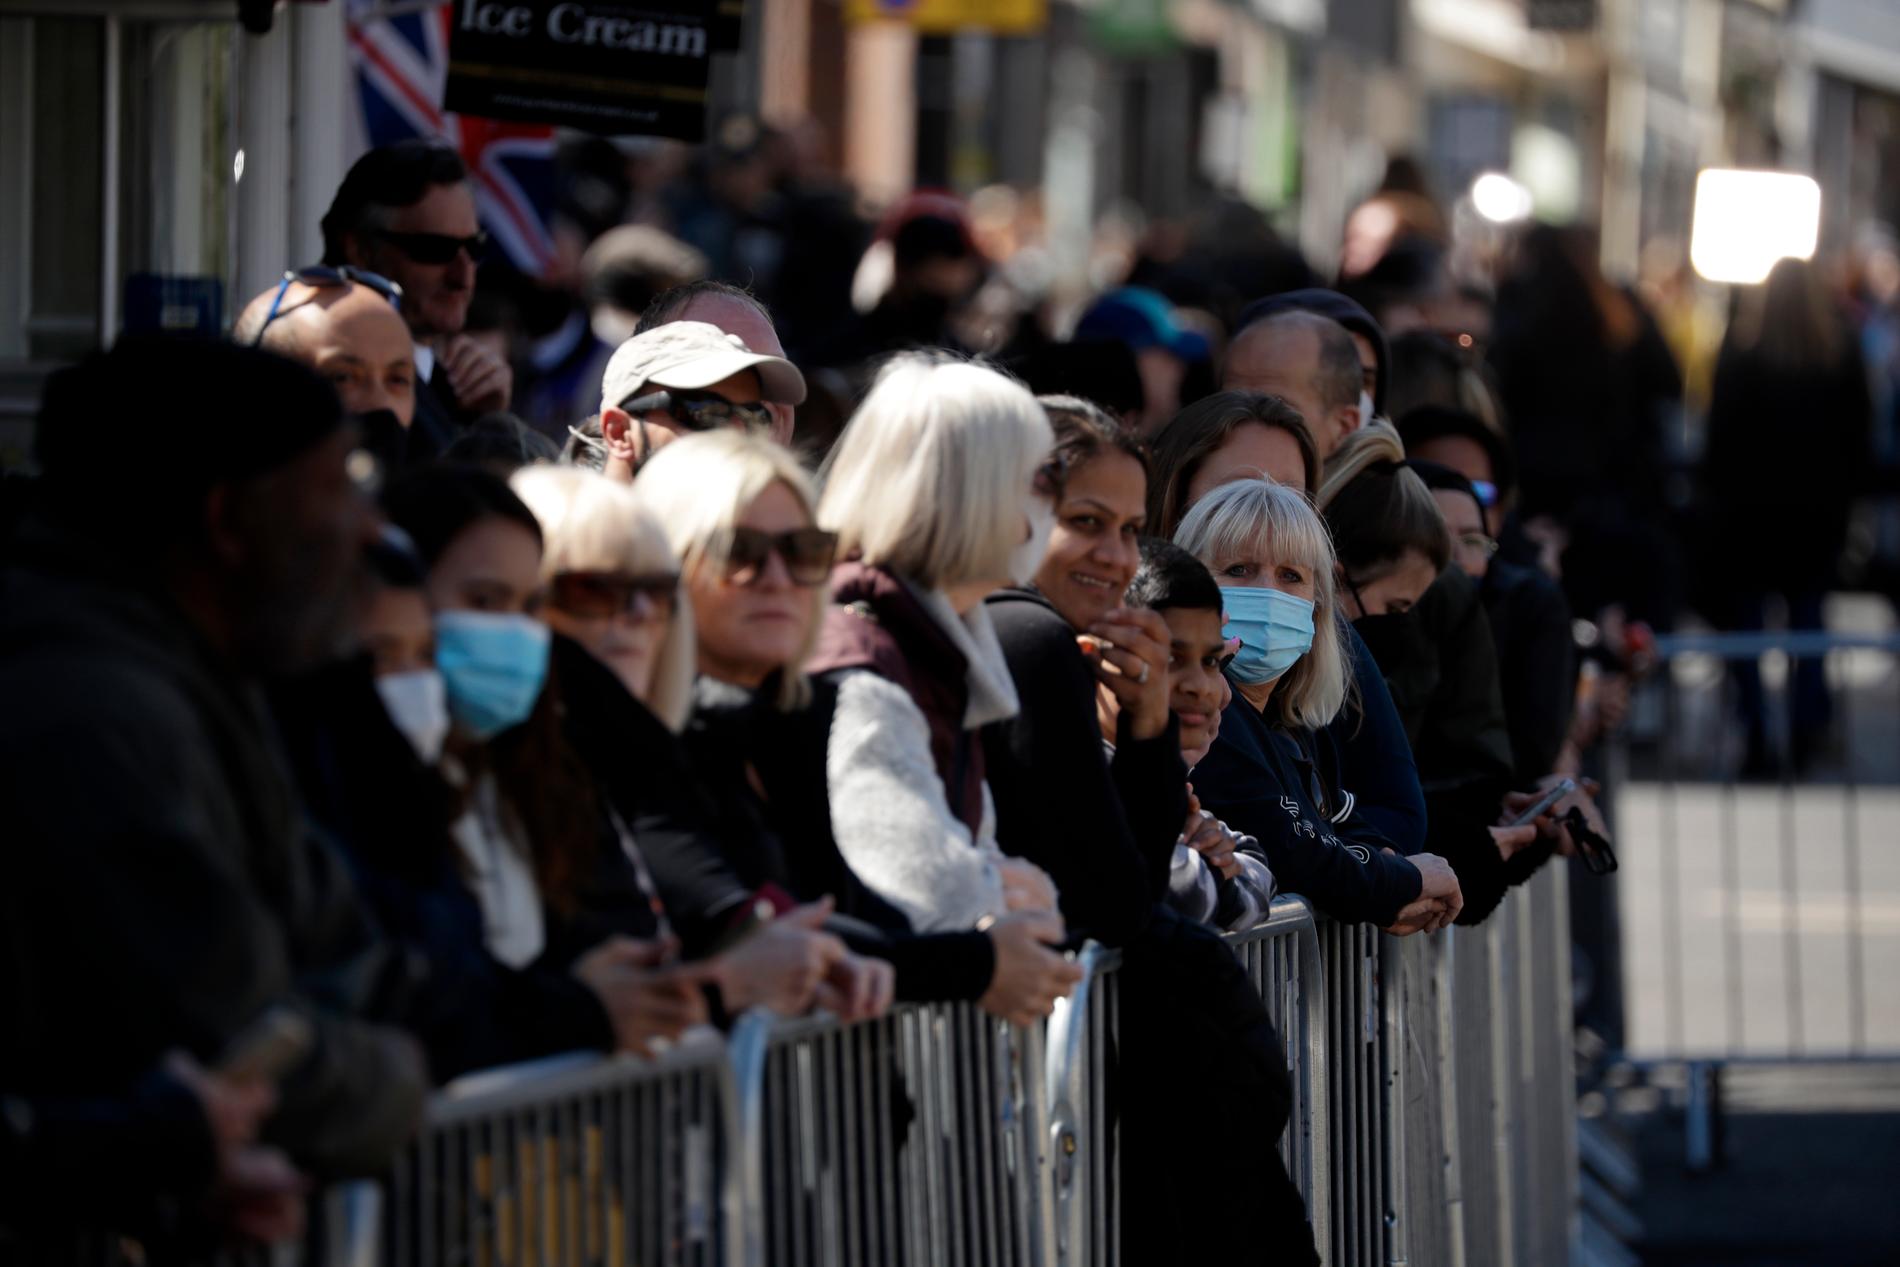 Människor väntade utanför Windsor Castle i London på begravningsprocessionen, trots uppmaningar till allmänheten att inte samlas för att ta farväl på grund av pandemin.